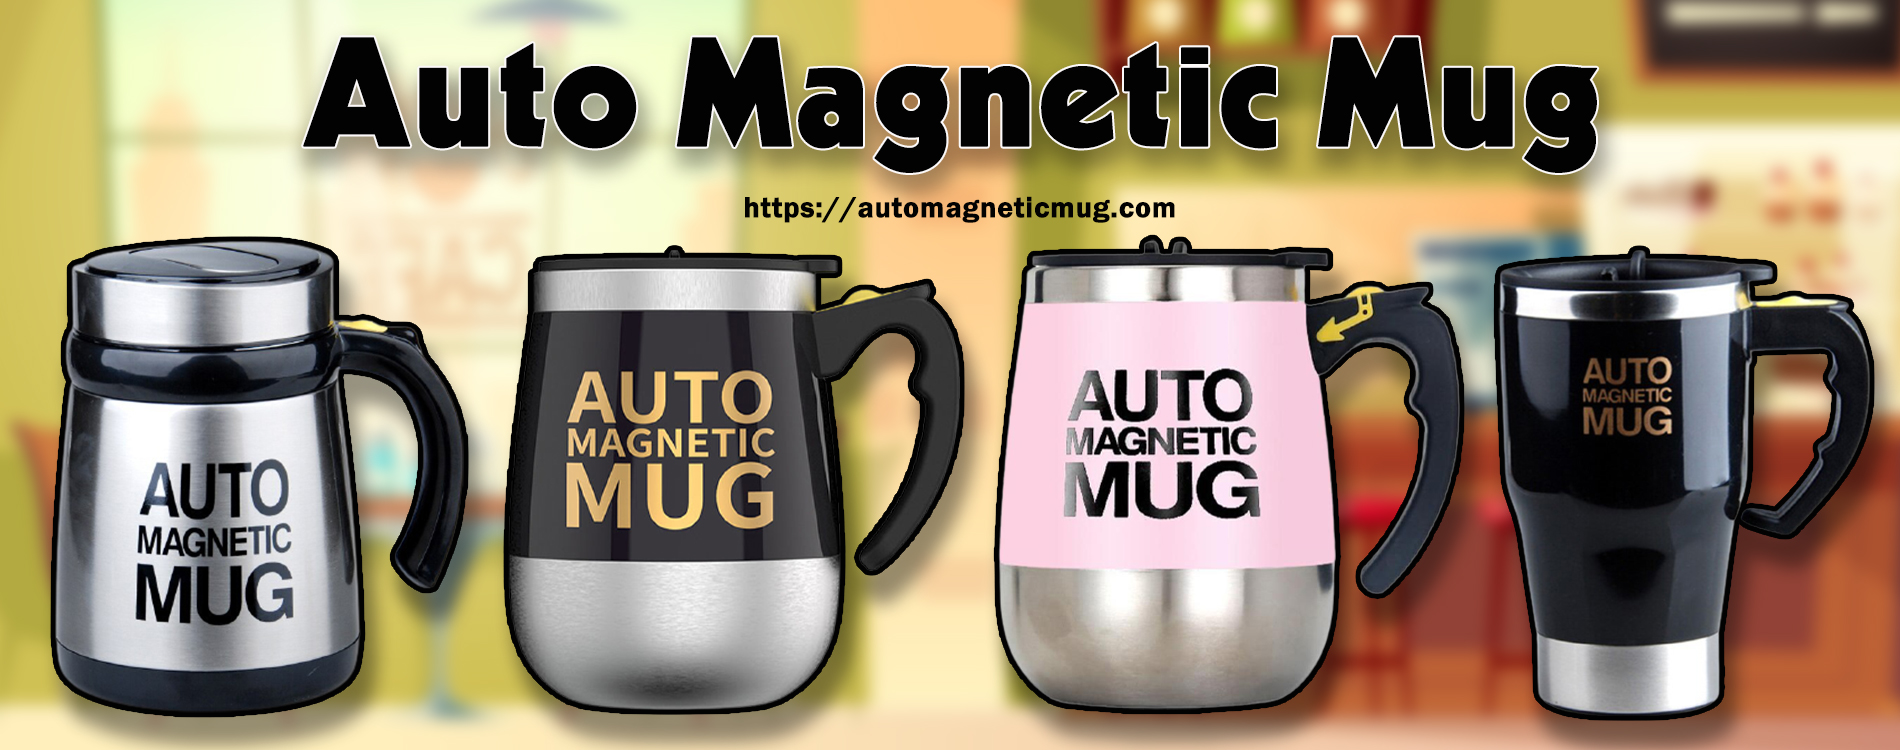 auto-magnetic-mug-banner